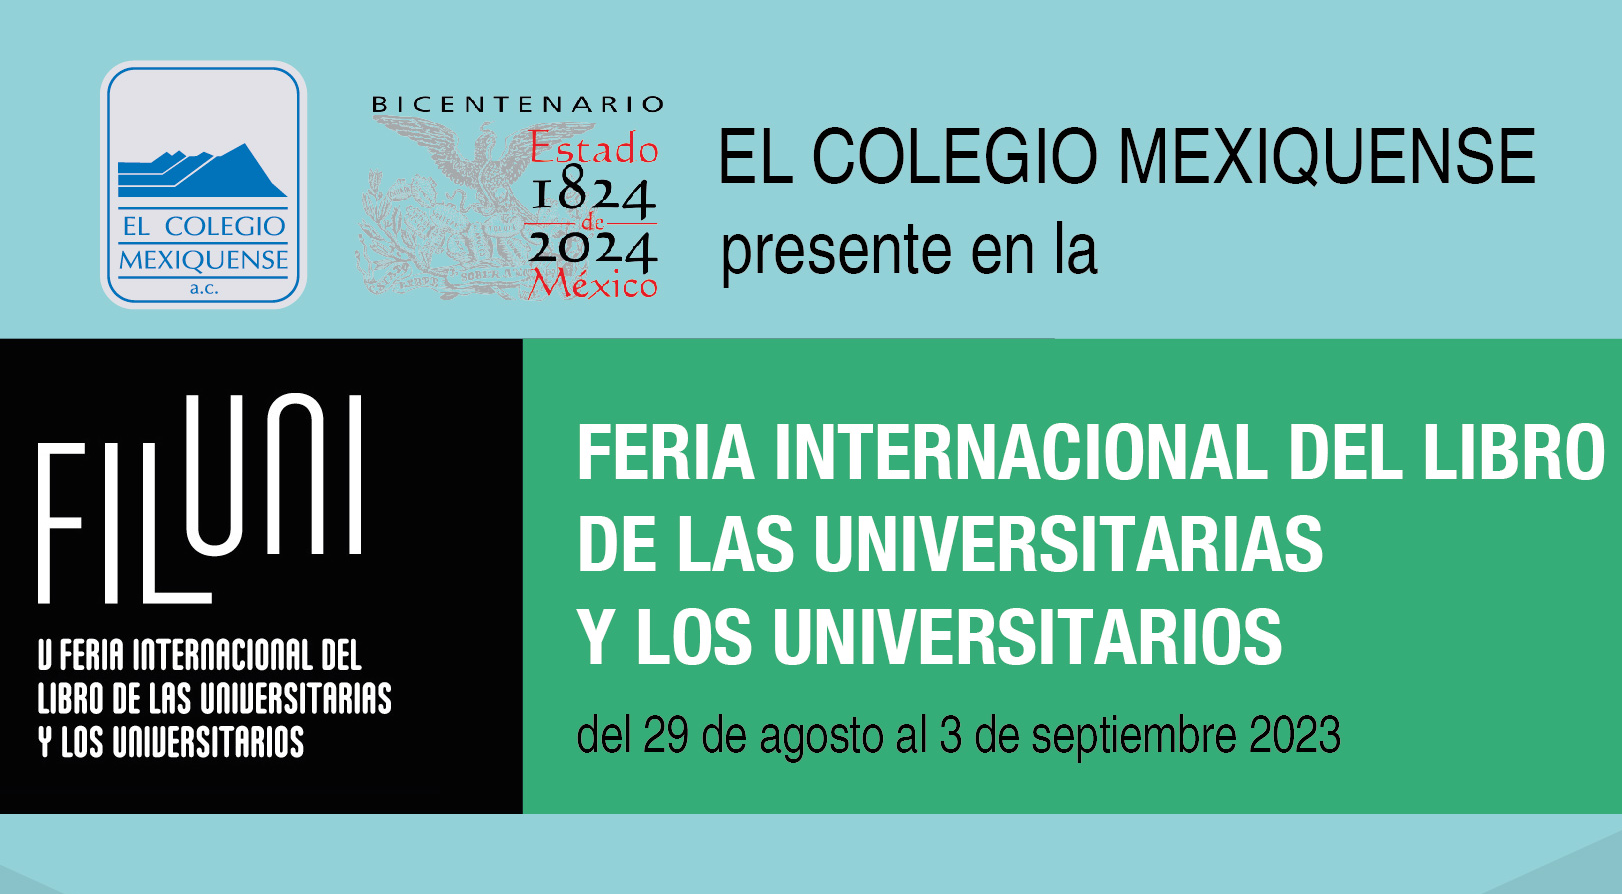 Participación en la Feria Internacional del Libro de las universitarias y los universitarios